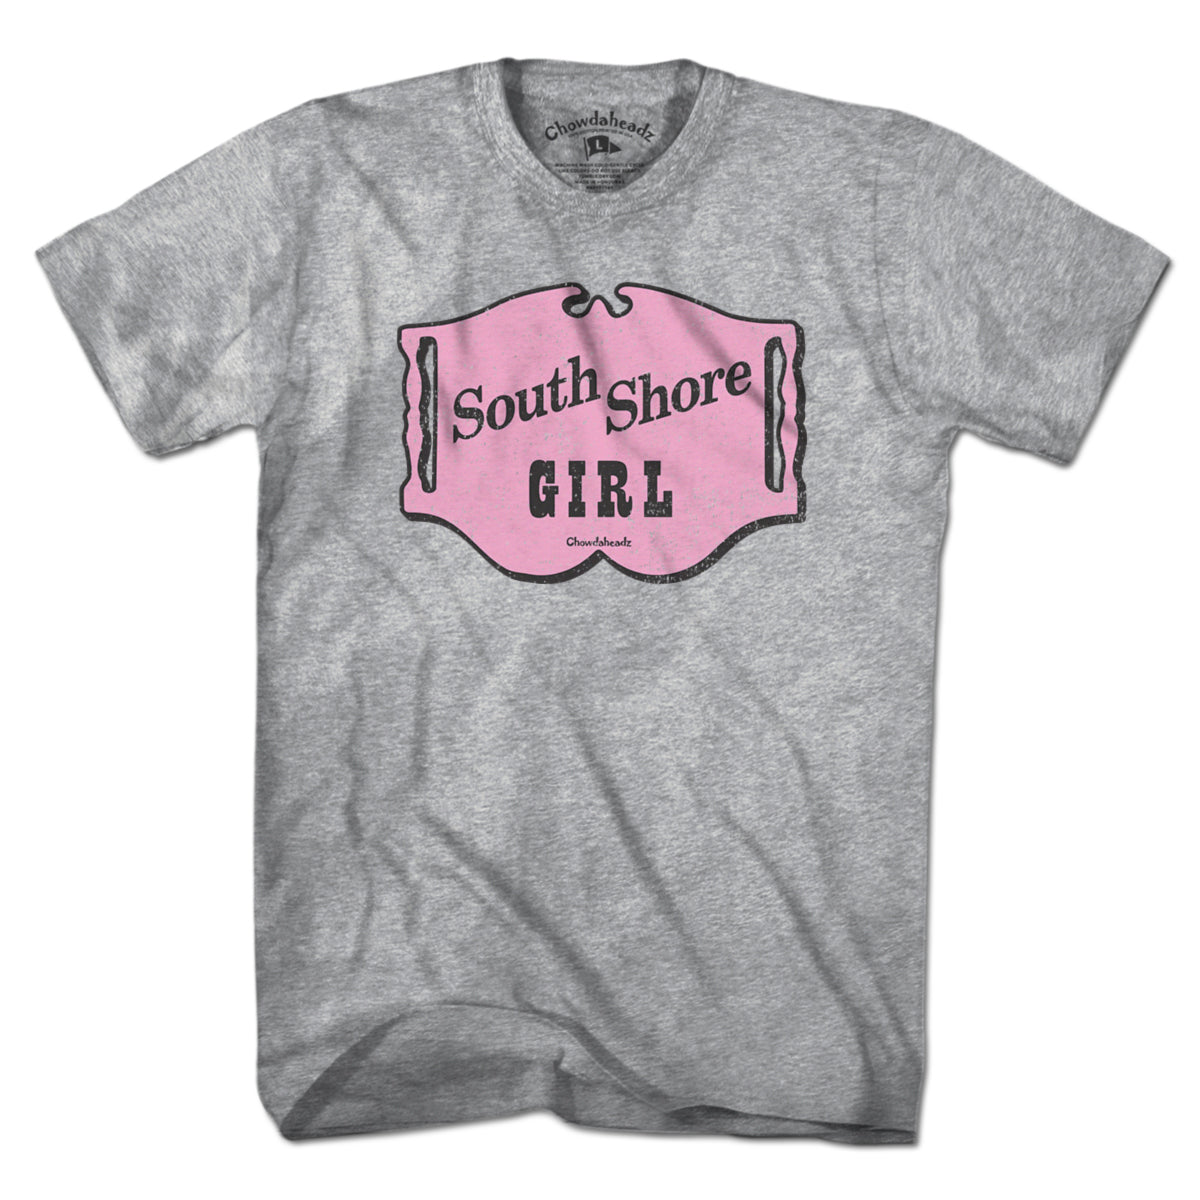 South Shore Girl Sign T-Shirt - Chowdaheadz